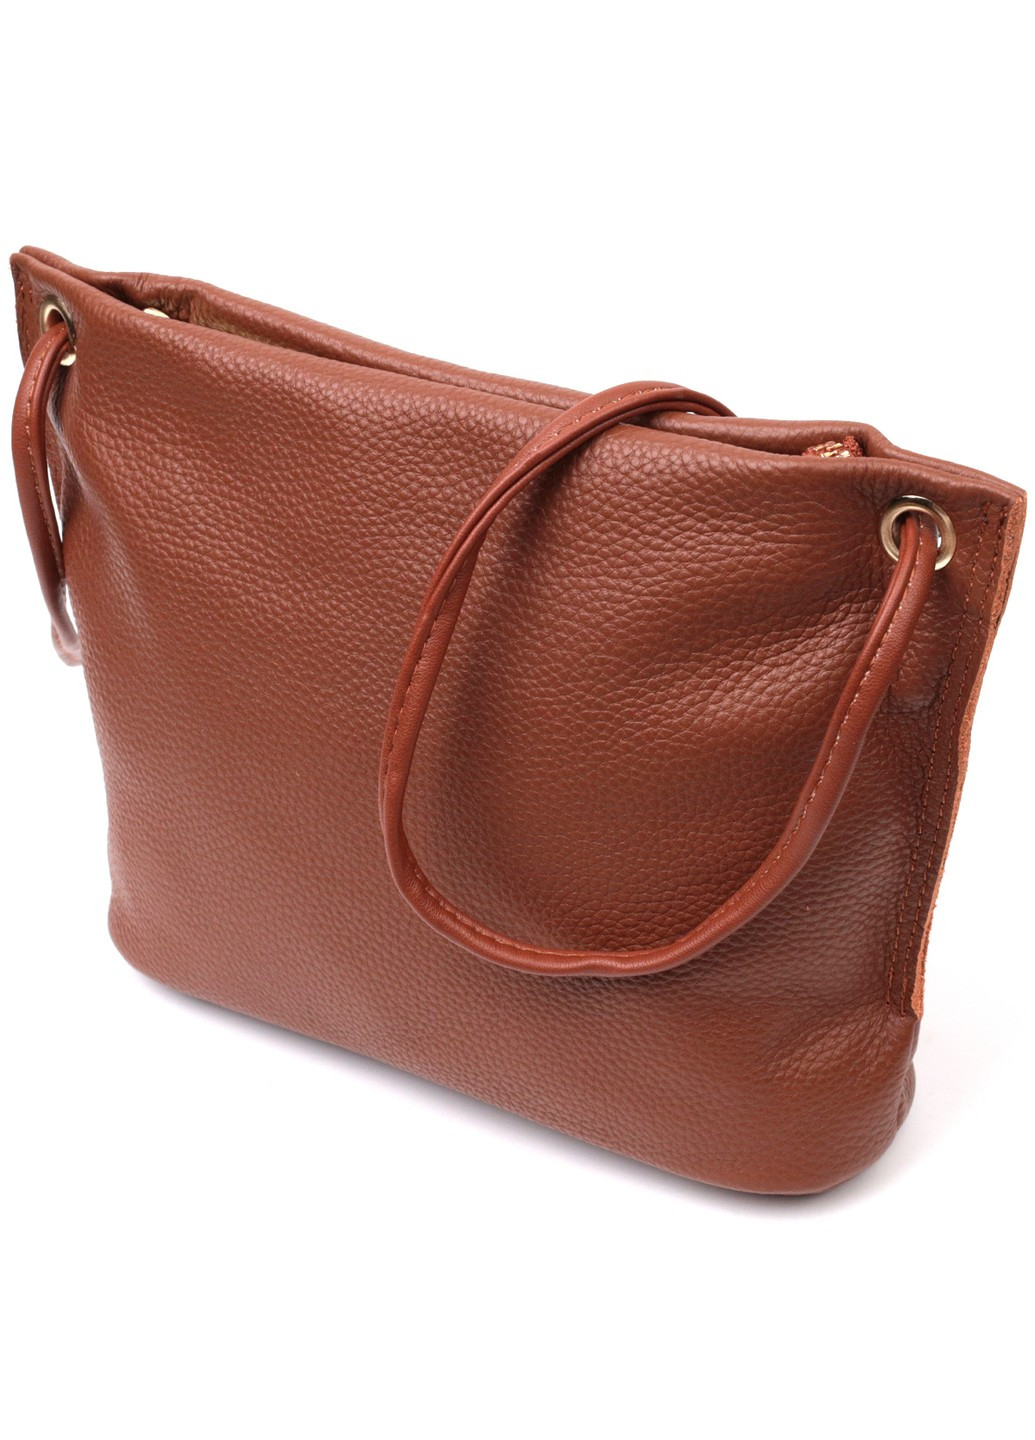 Трапециевидная сумка для женщин на плечо из натуральной кожи 22397 Коричневая Vintage (276457531)